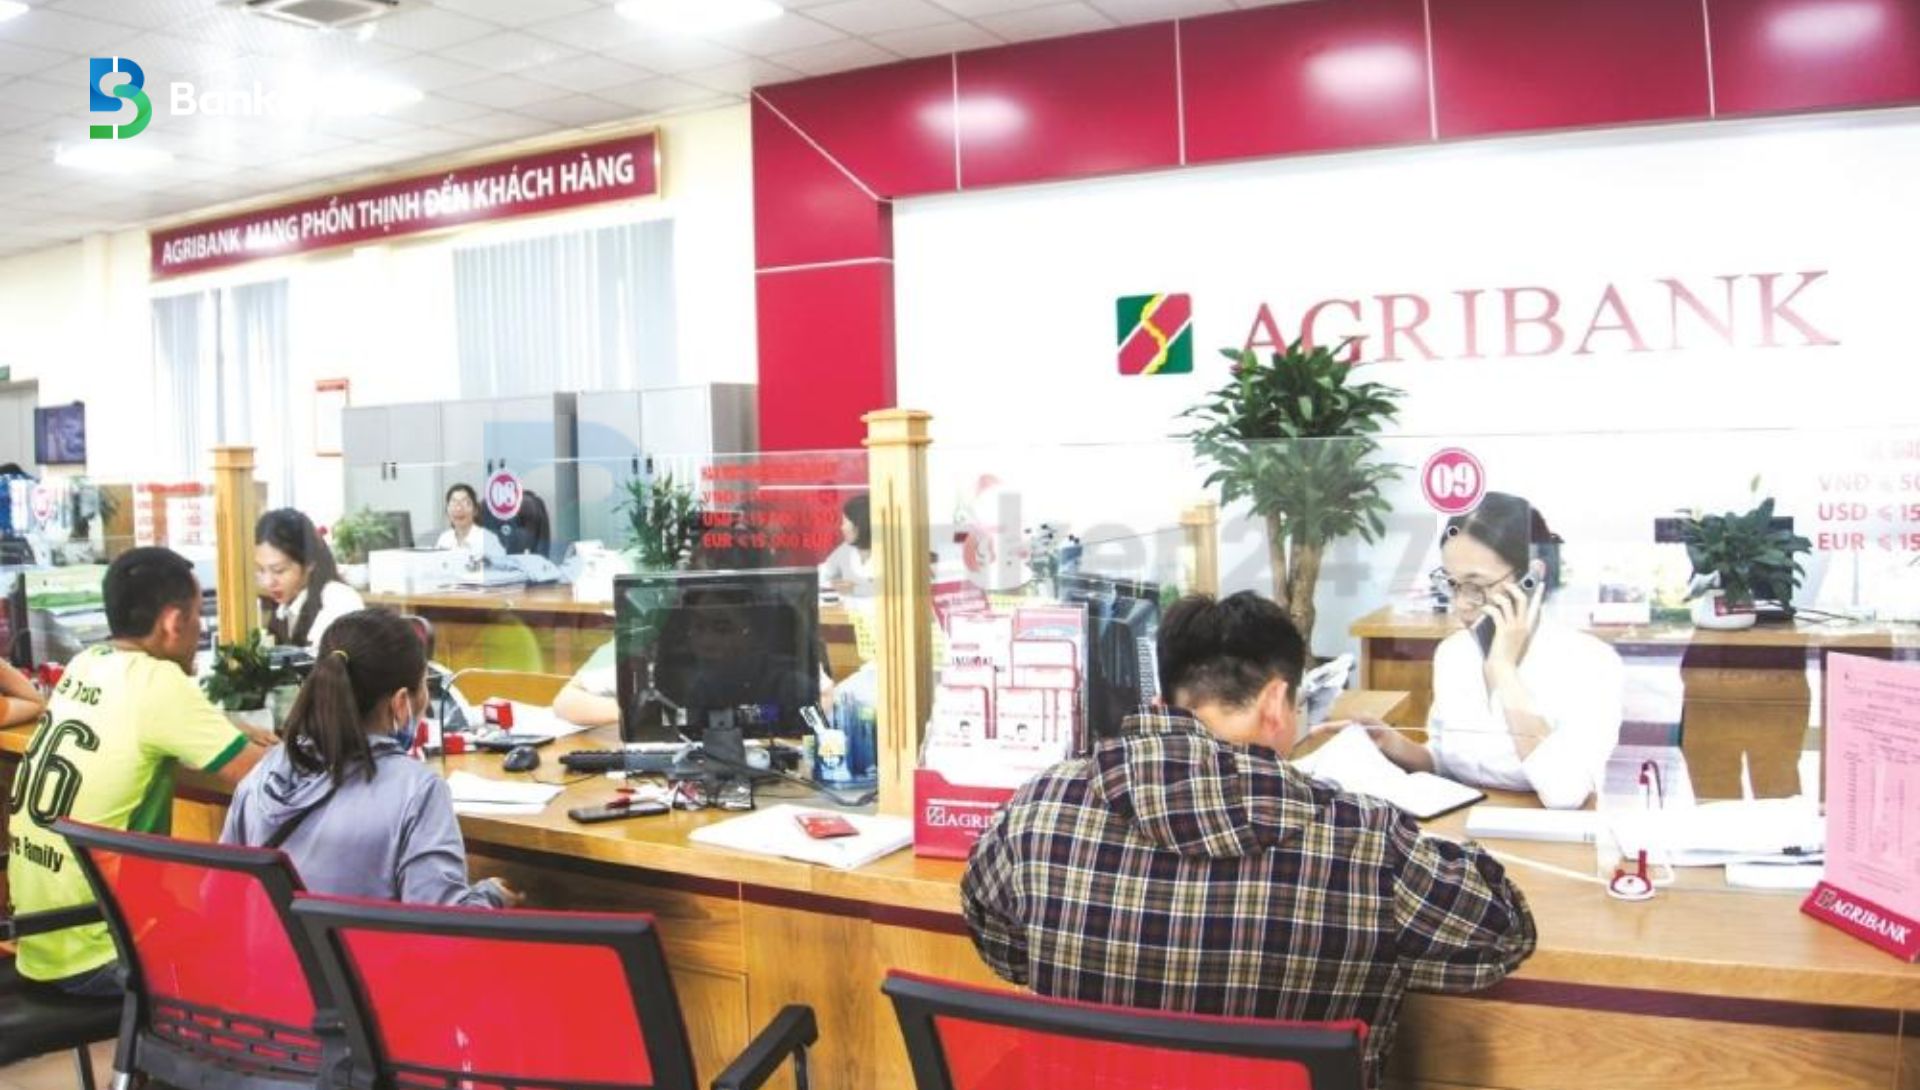 Dịch vụ đáo hạn ngân hàng Agribank là gì?